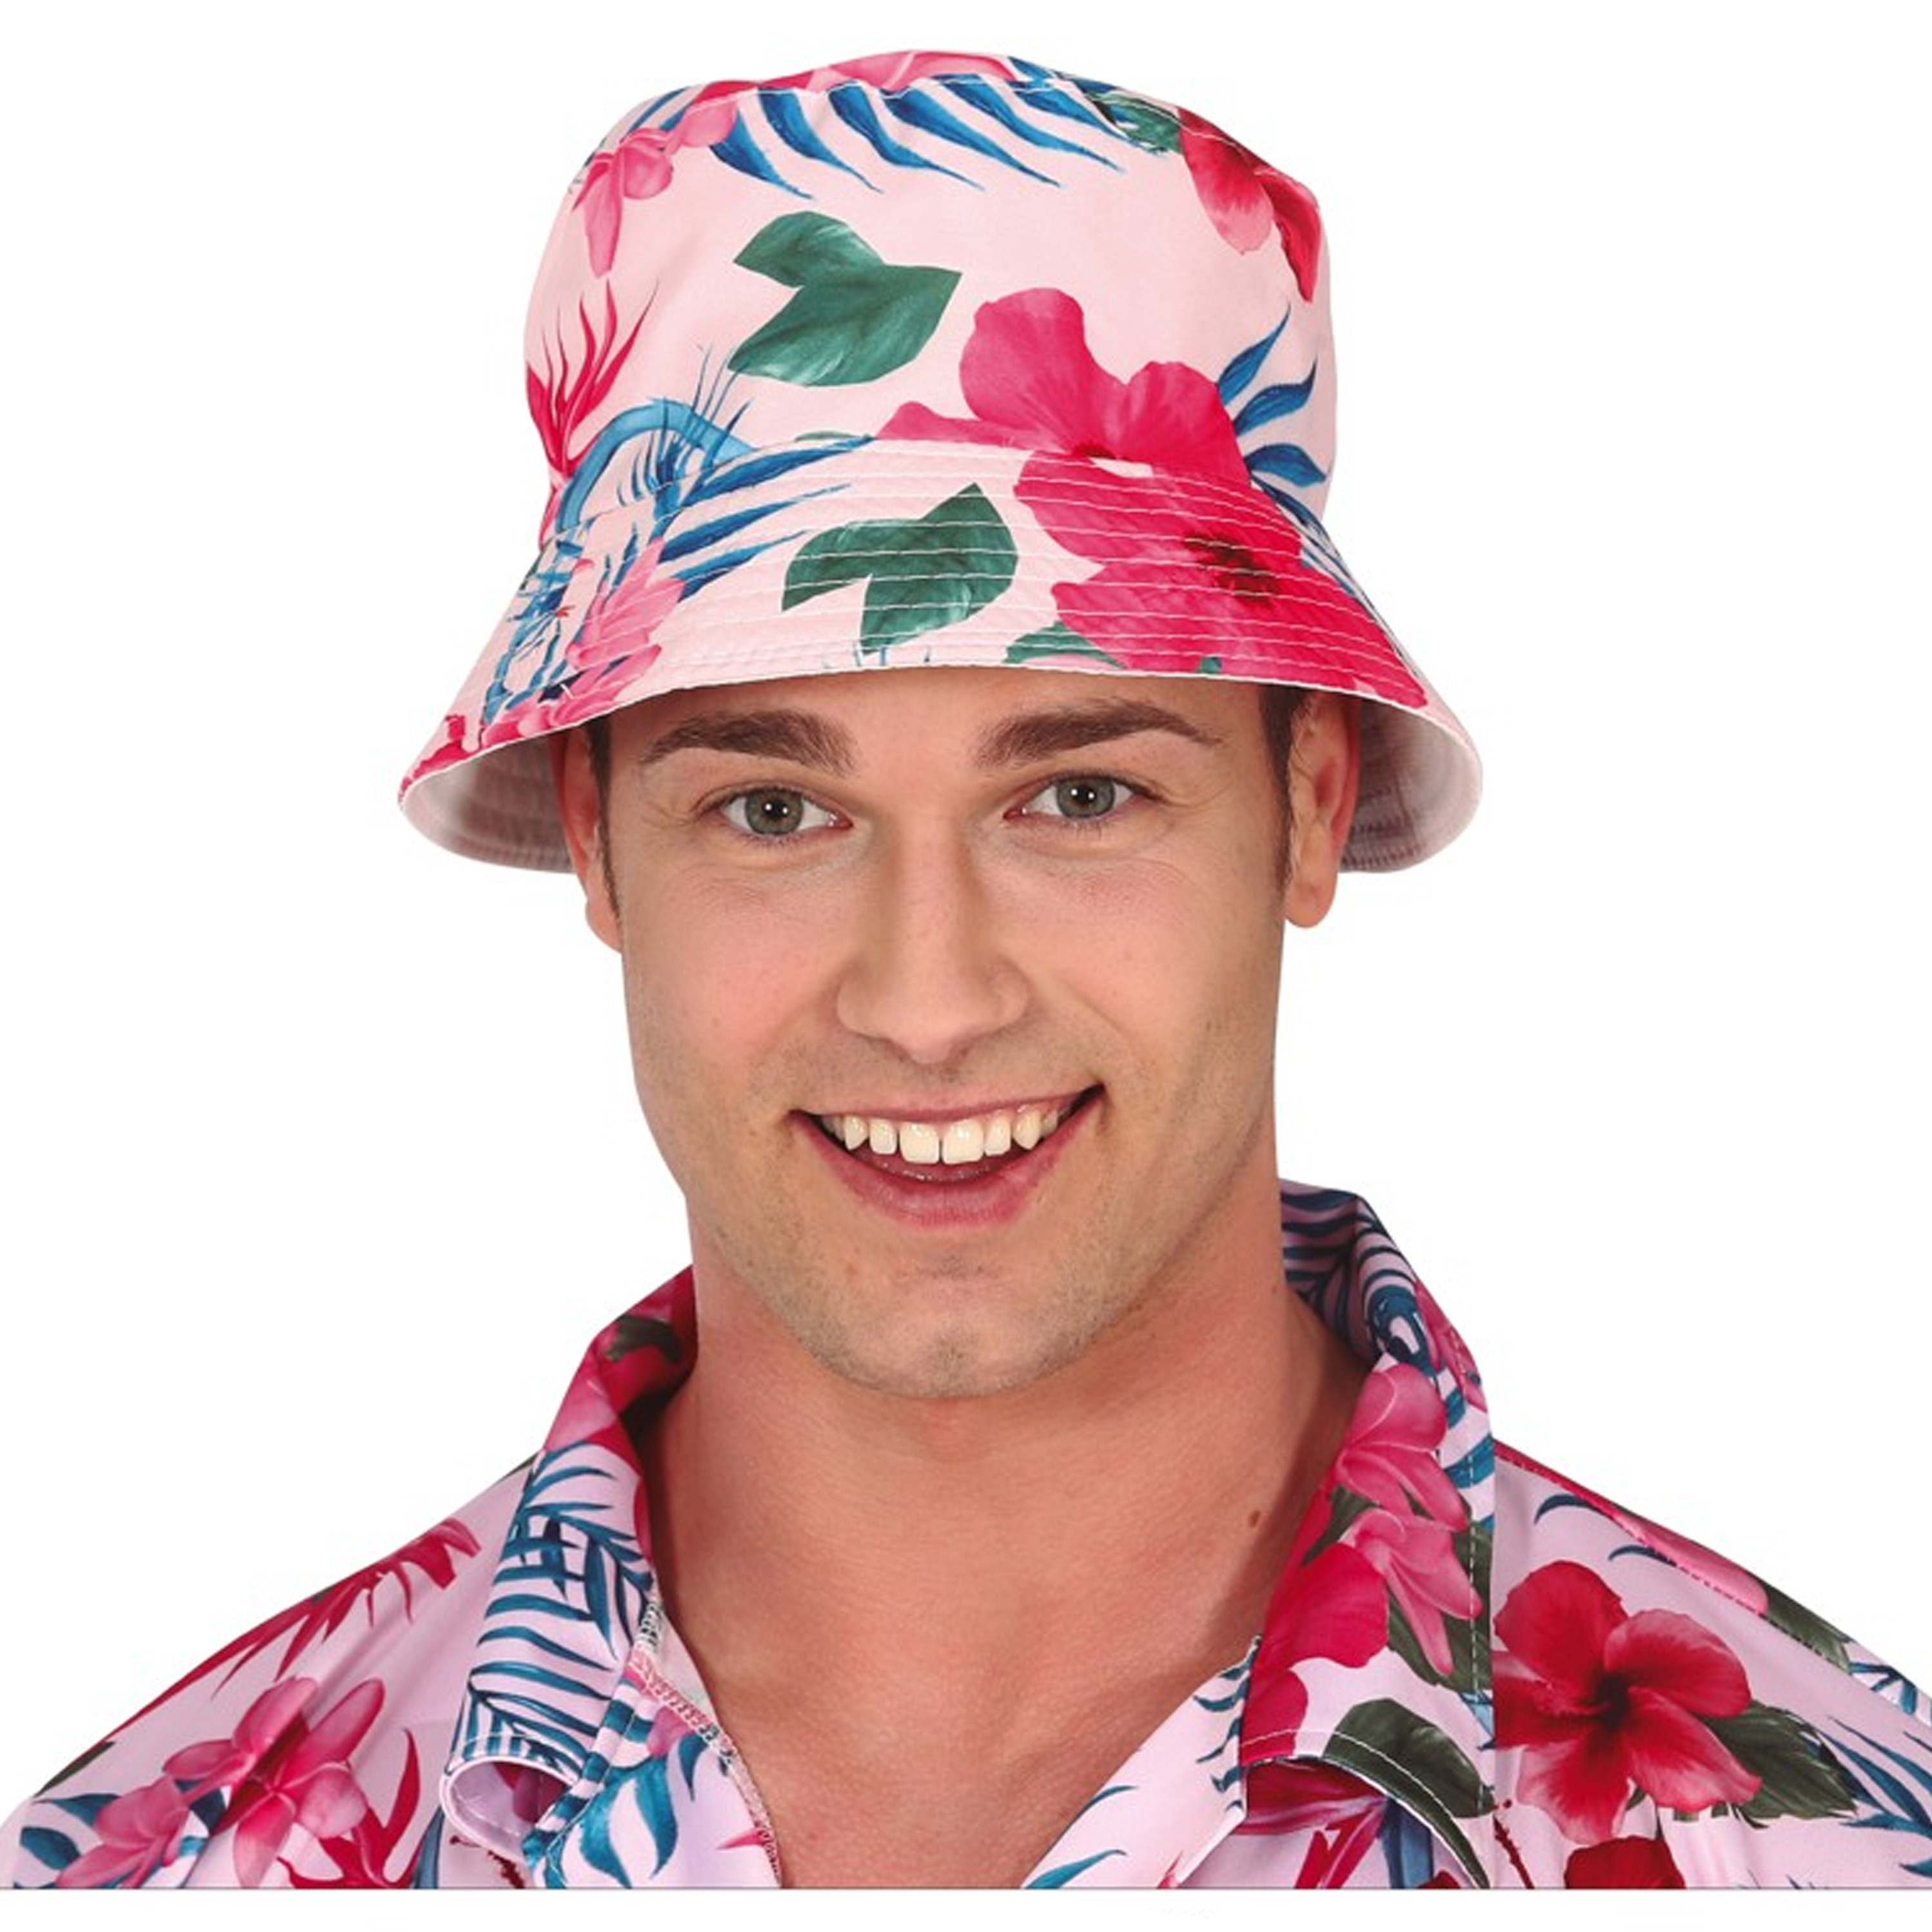 Toppers Verkleed hoedje voor Tropical Hawaii party Roze flamingo print volwassenen Carnaval